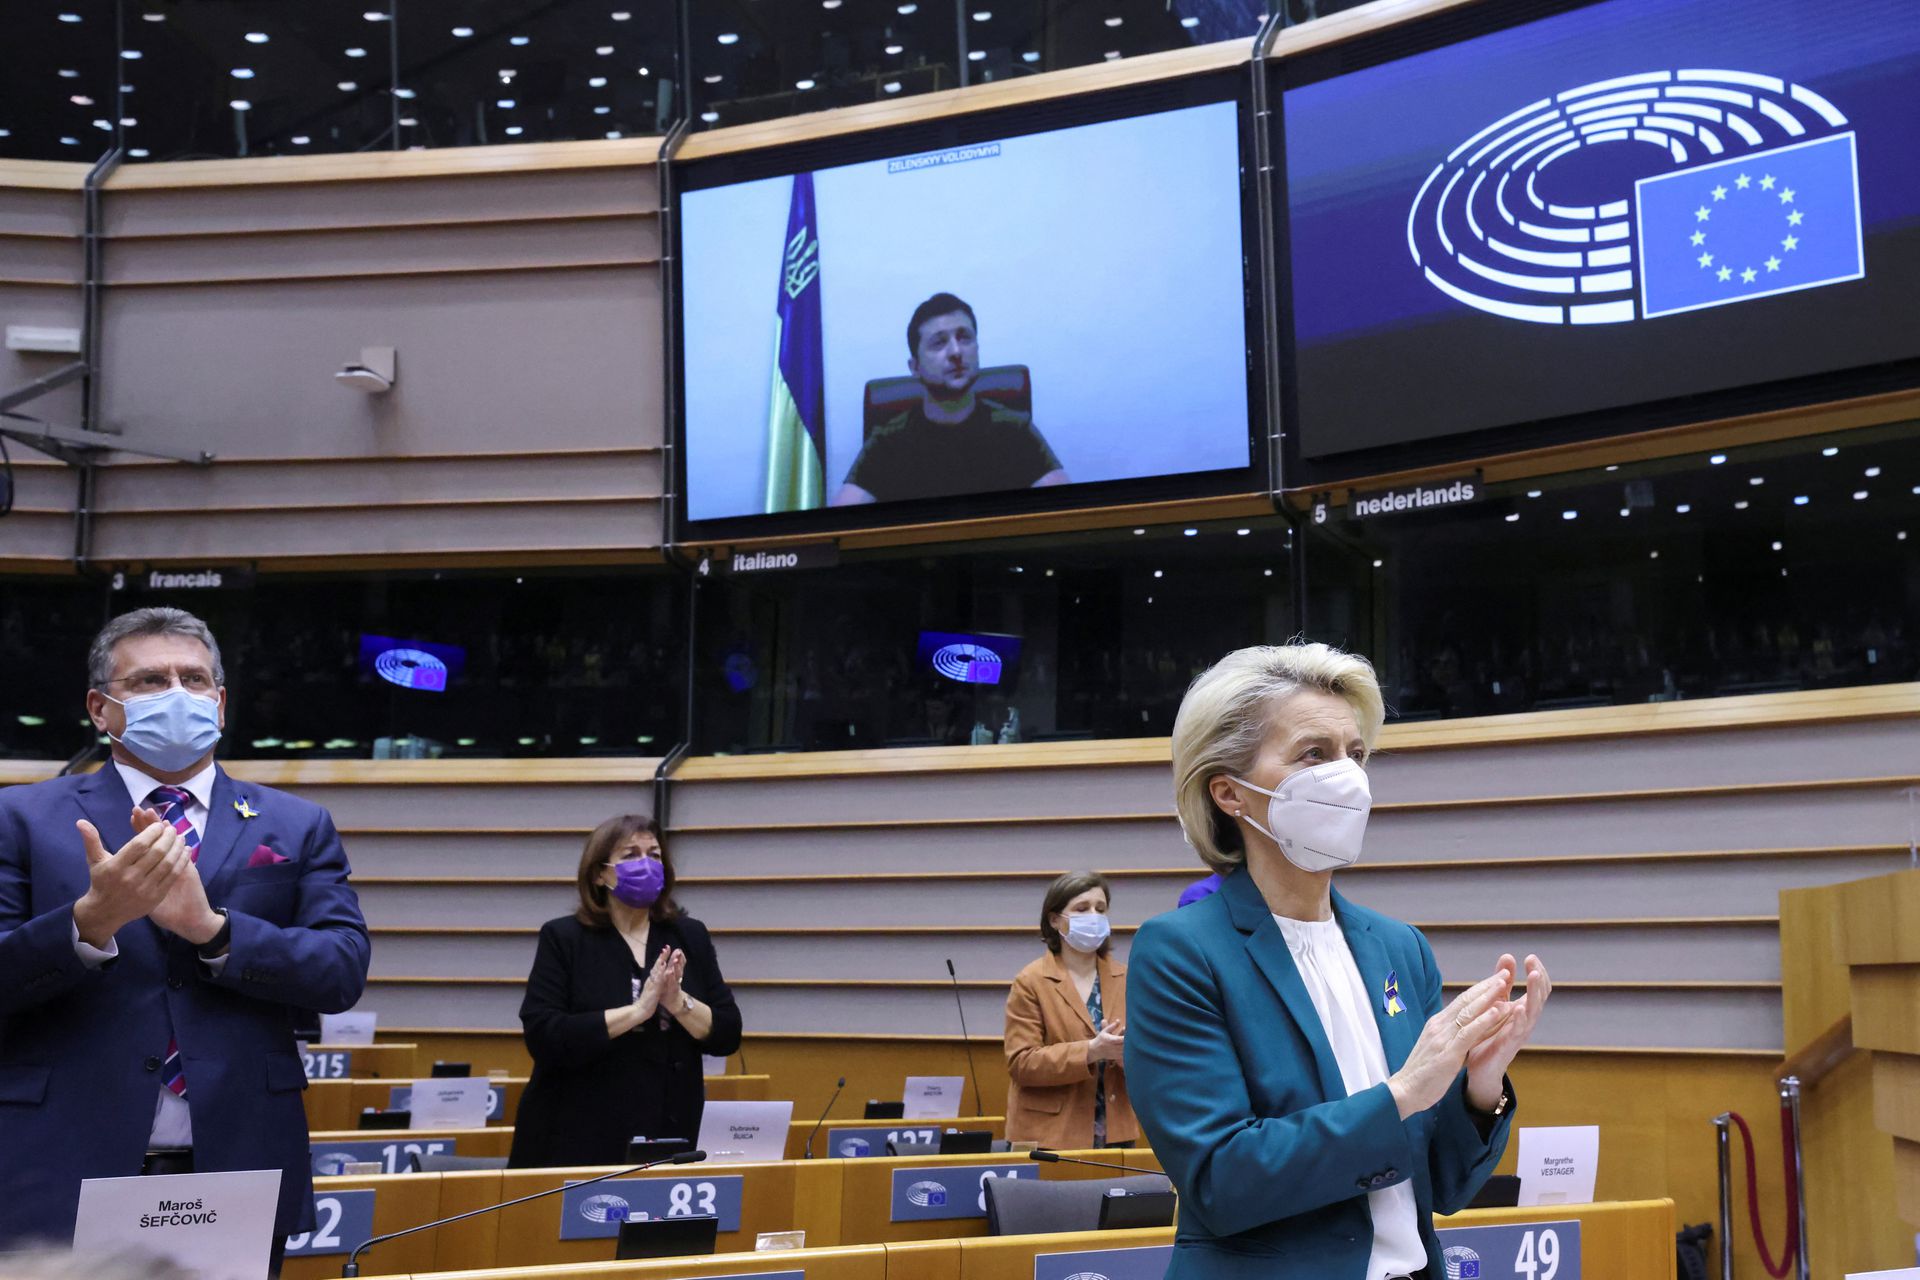 رئيسة المفوضية الأوروبية، أورسولا فون دير لاين، تشيد بالخطاب الذي ألقاه الرئيس الأوكراني فولوديمير زيلينسكي في الجلسة الخاصة للبرلمان الأوروبي لمناقشة ردها على الغزو الروسي لأوكرانيا في بروكسل، بلجيكا - 1 من آذار 2022 (رويترز)